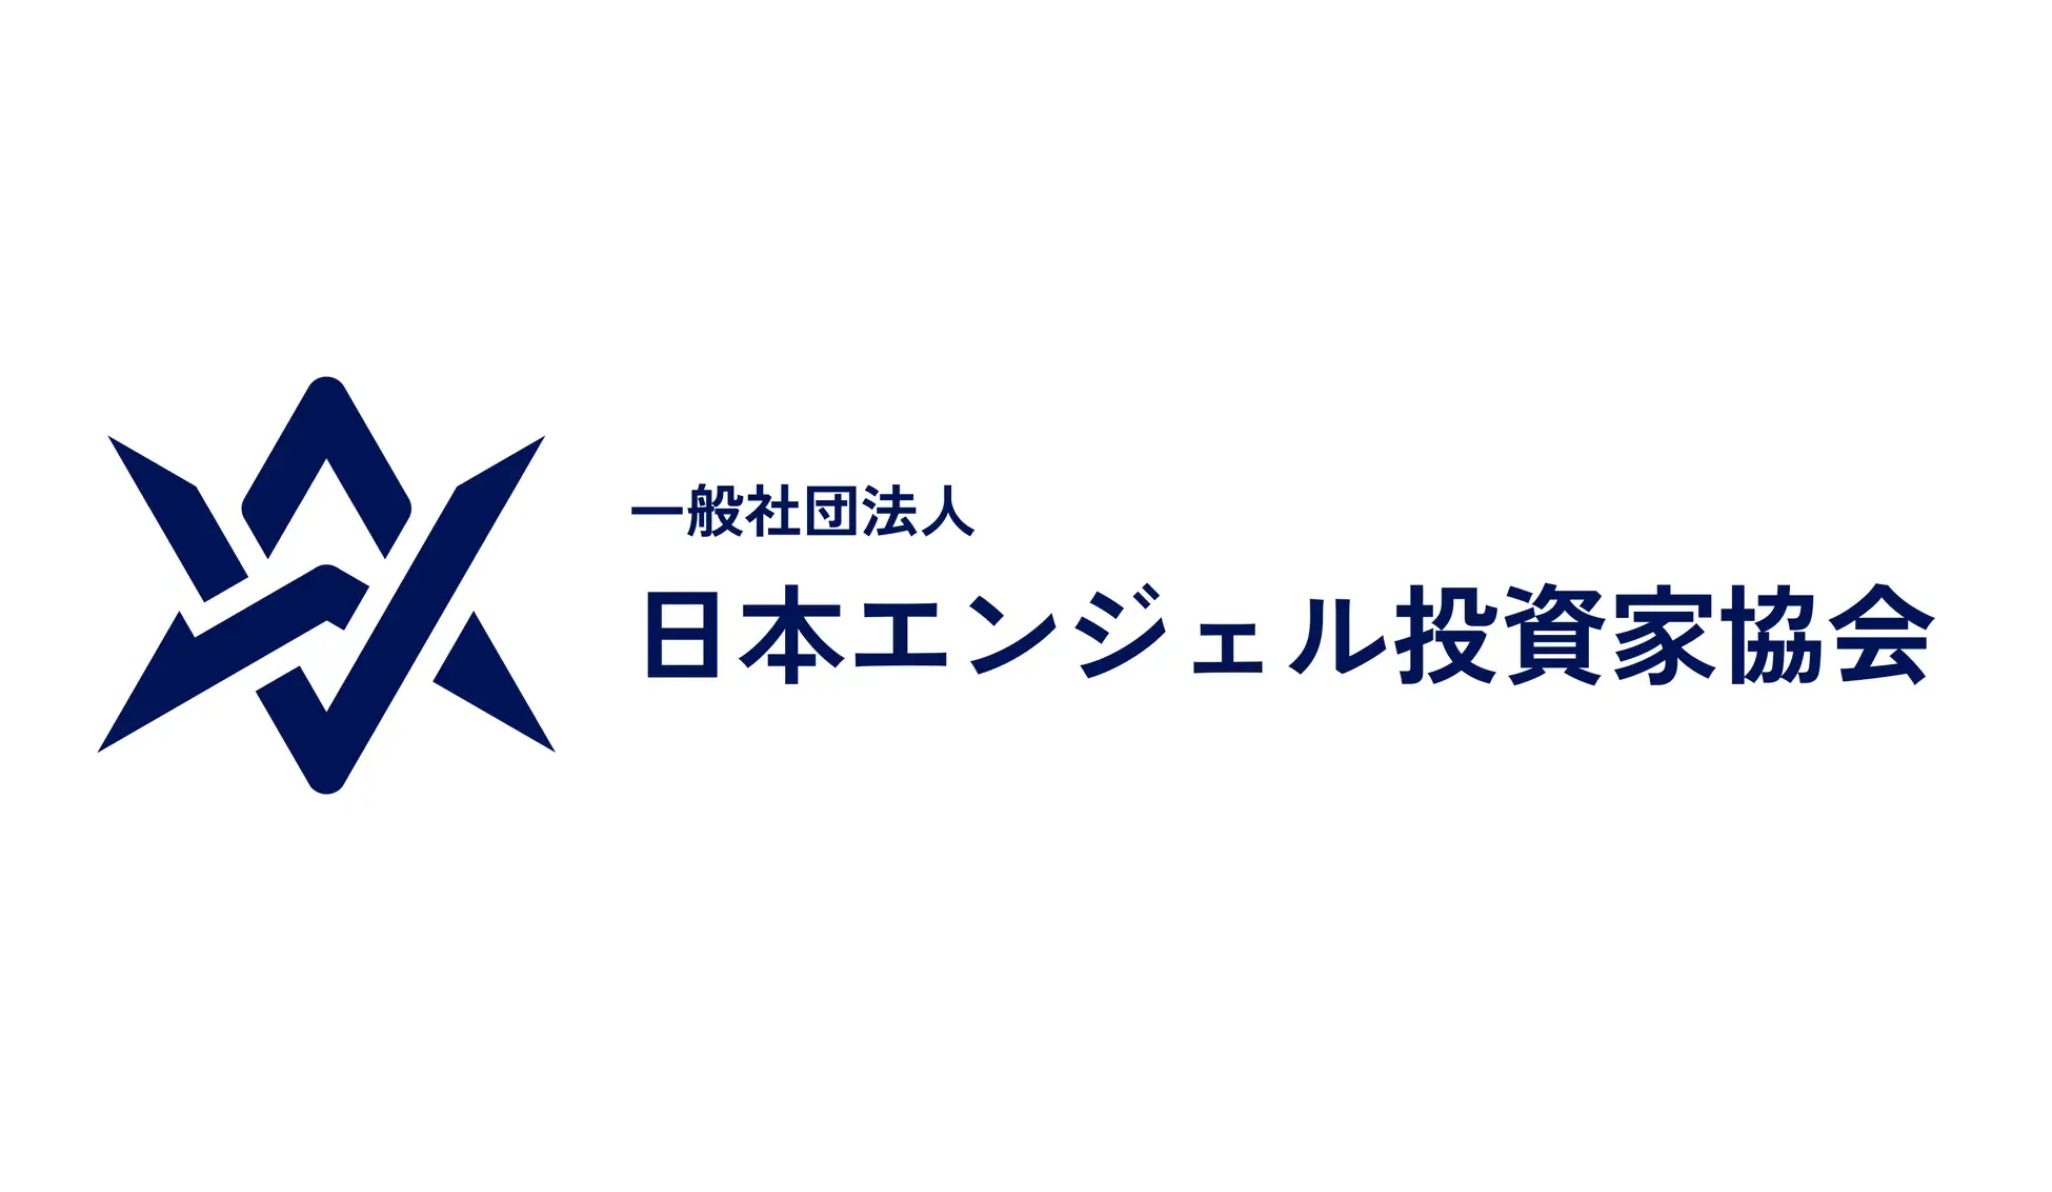 「日本エンジェル投資家協会」が設立されました